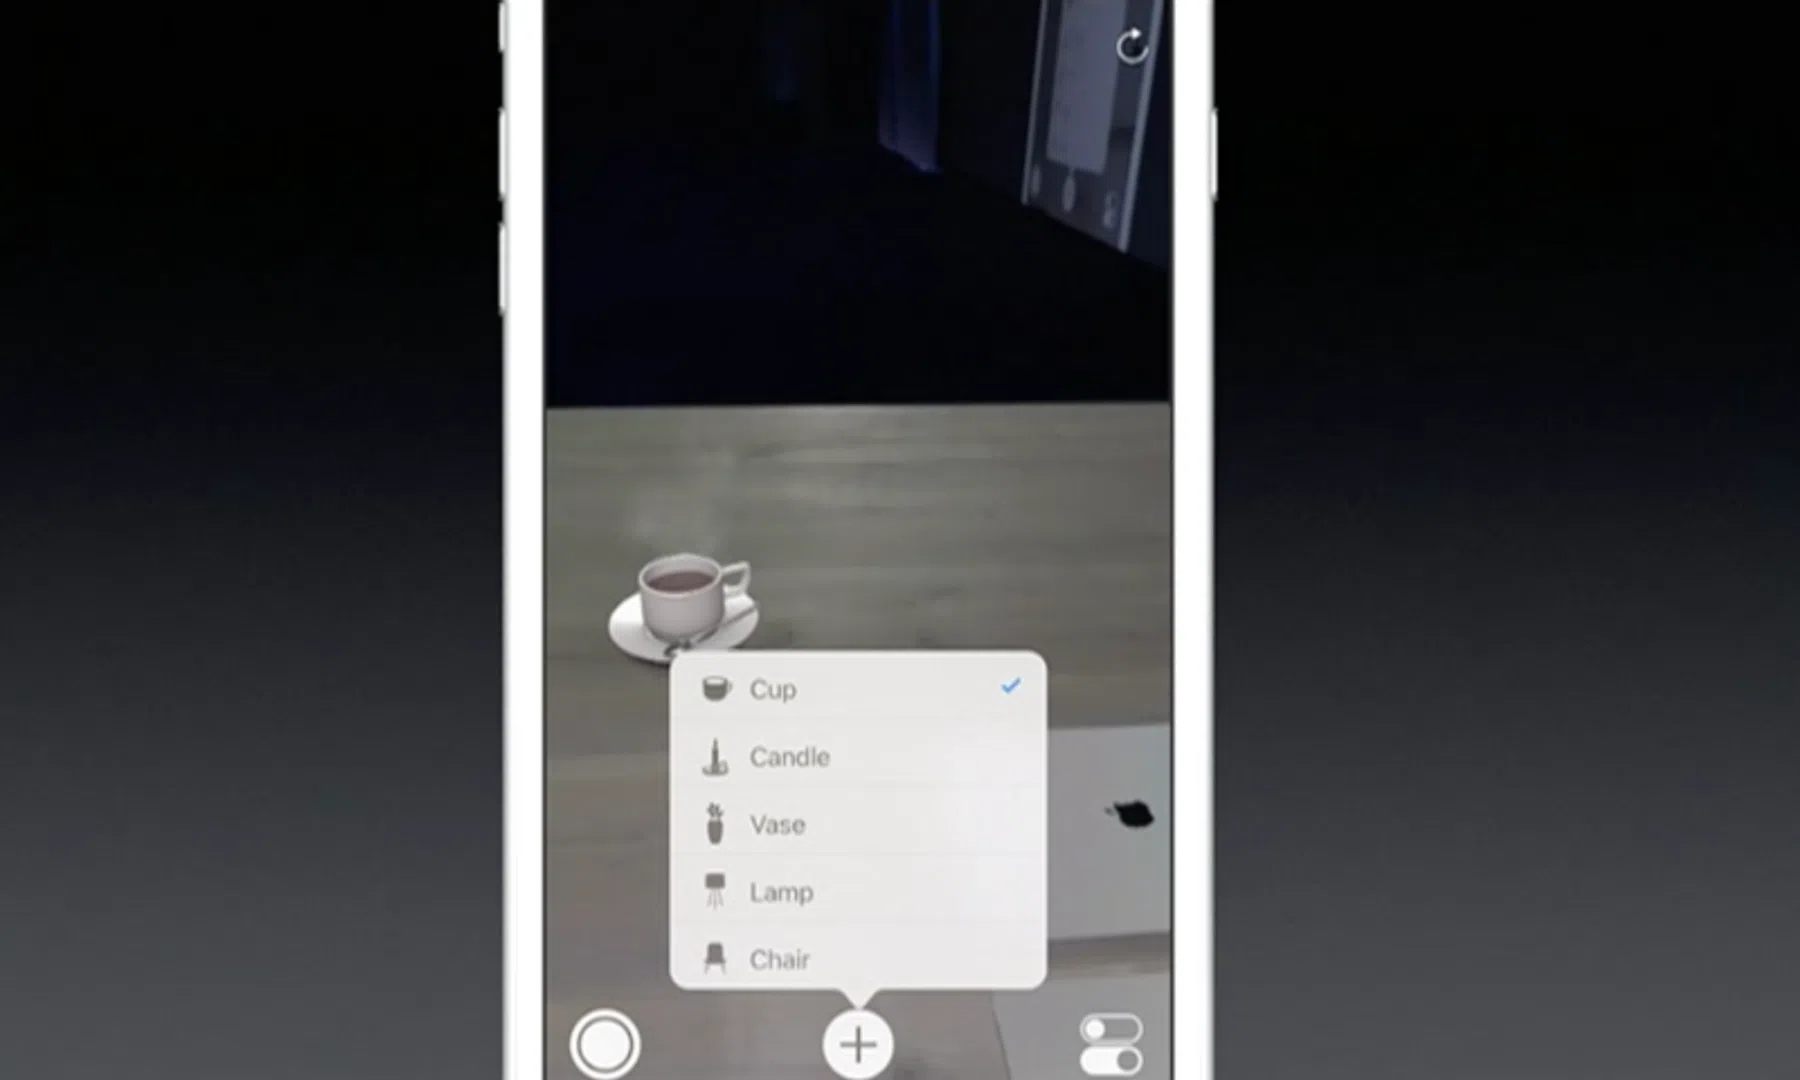 Nieuw in iOS 11: van AR tot slimmere Siri